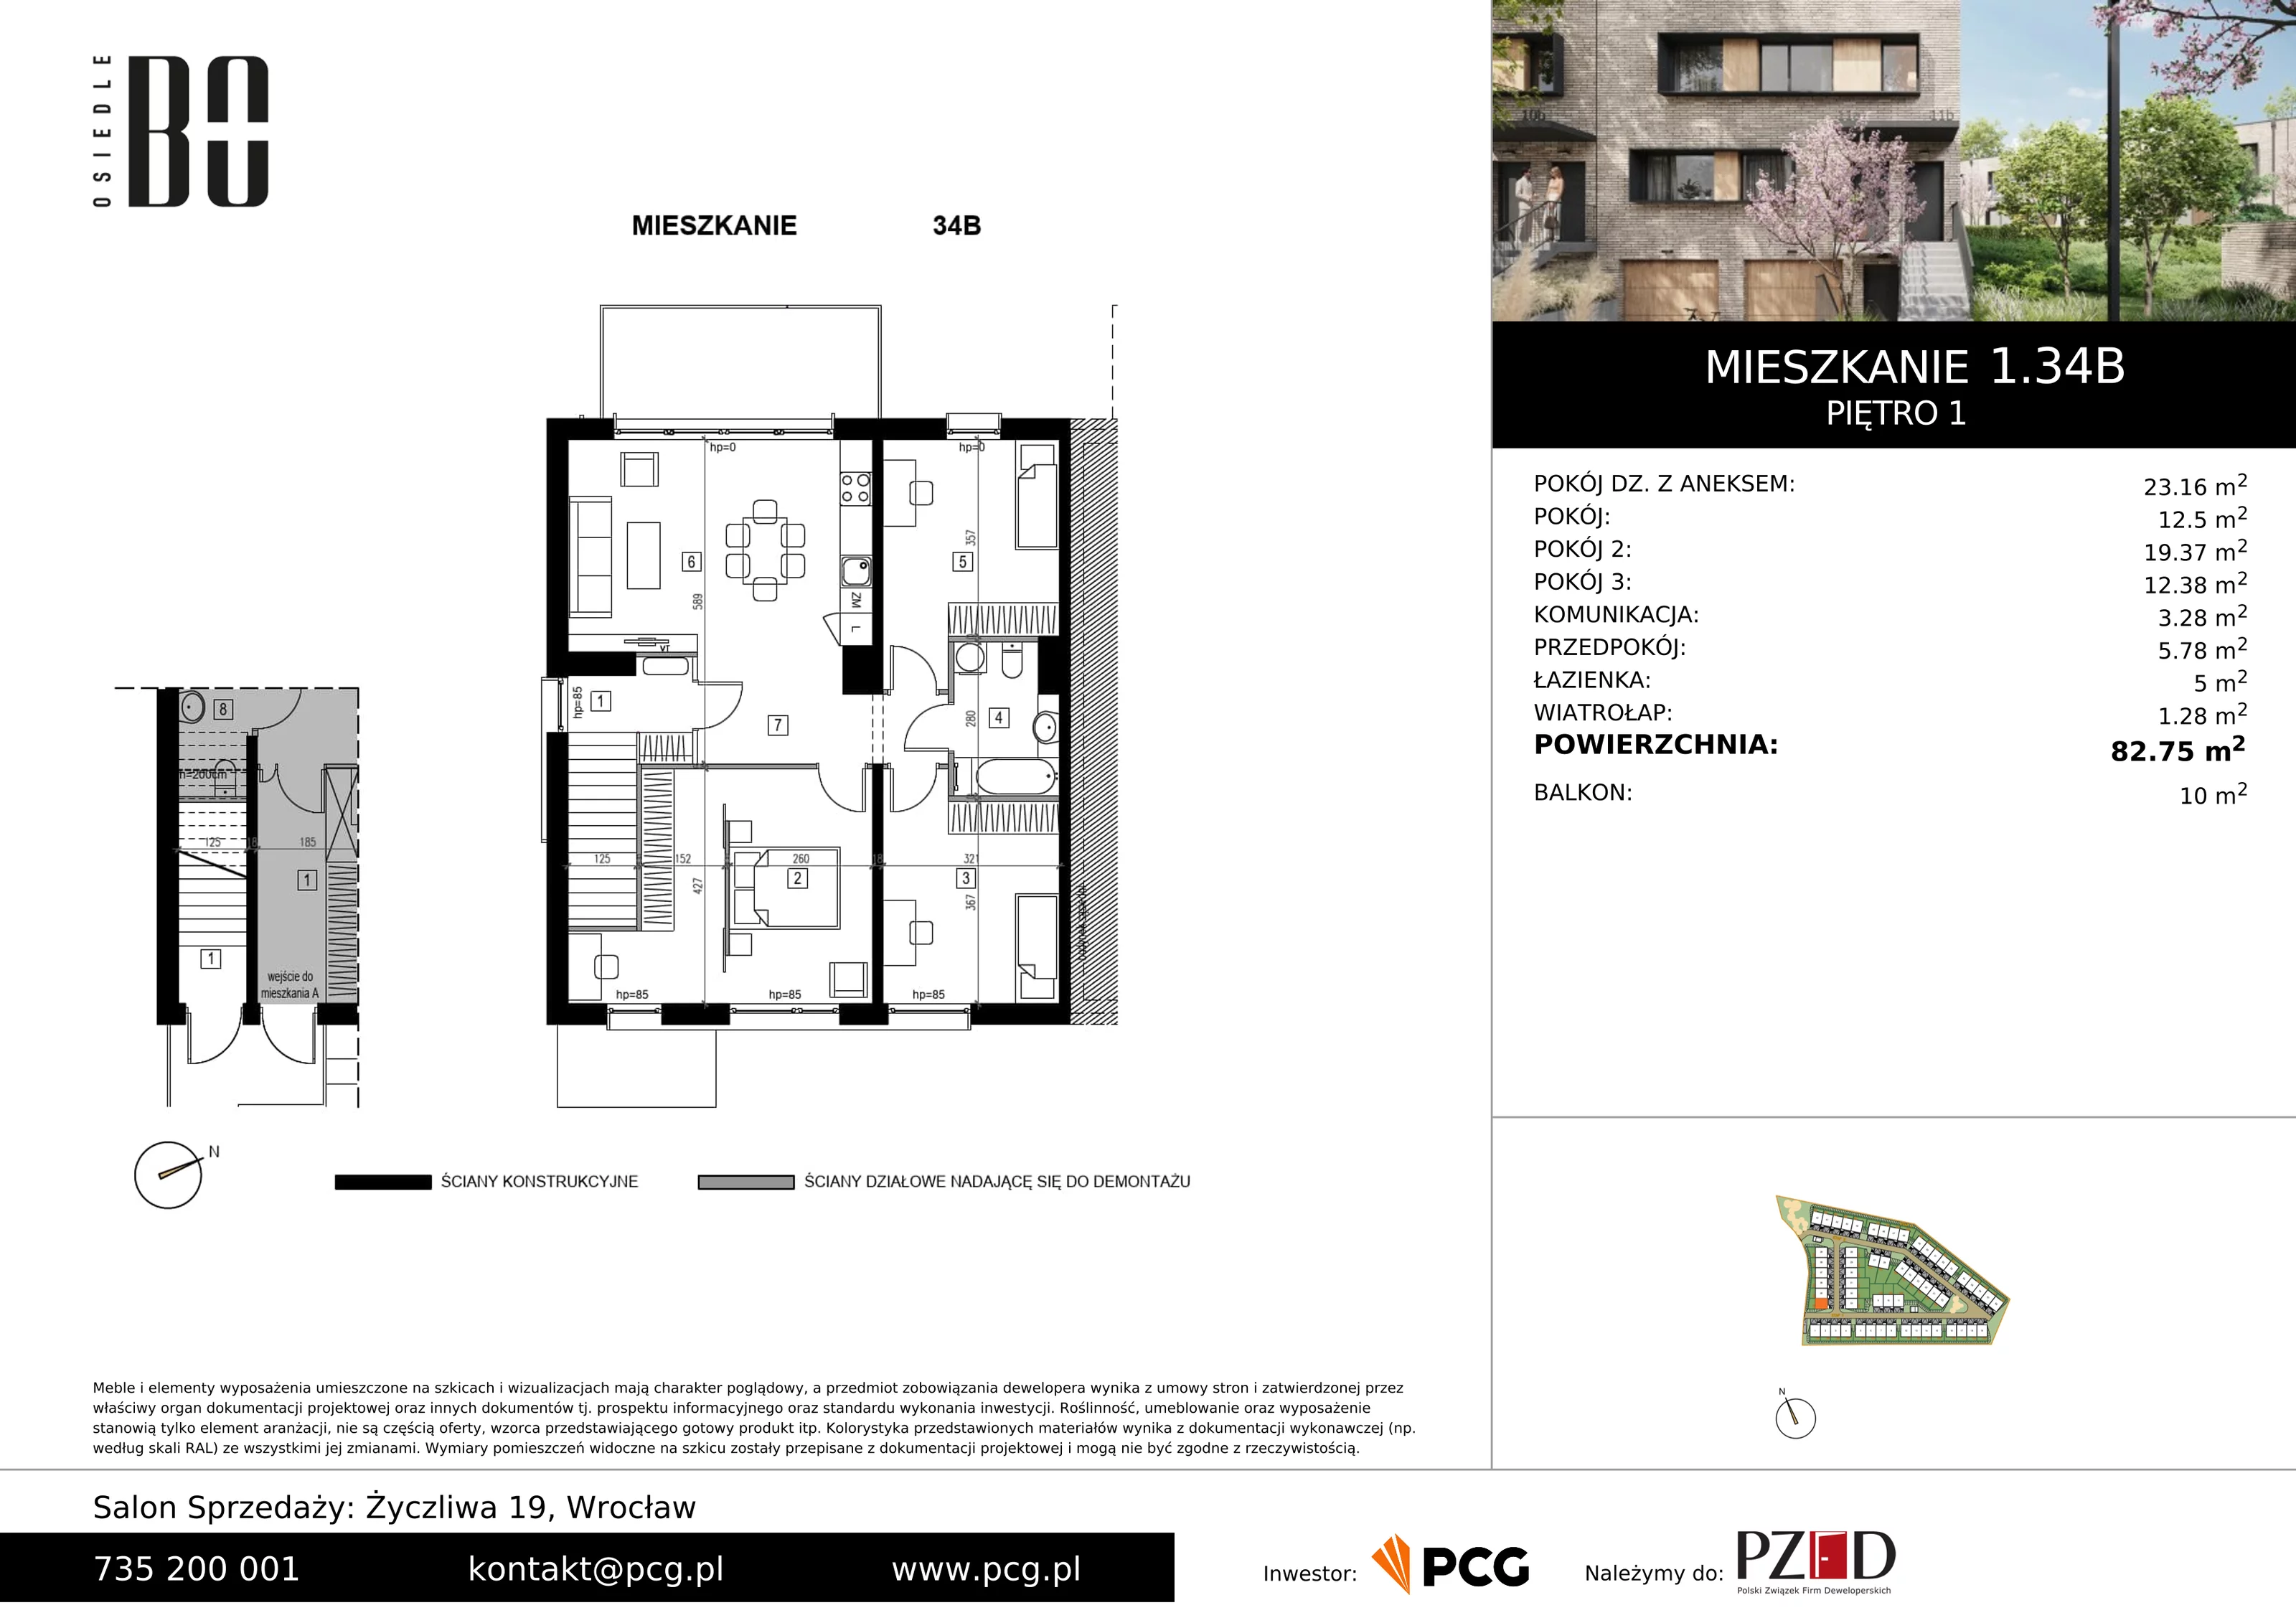 Apartament 82,75 m², piętro 1, oferta nr 1.34B, Osiedle BO, Wrocław, Kowale, ul. Bociana